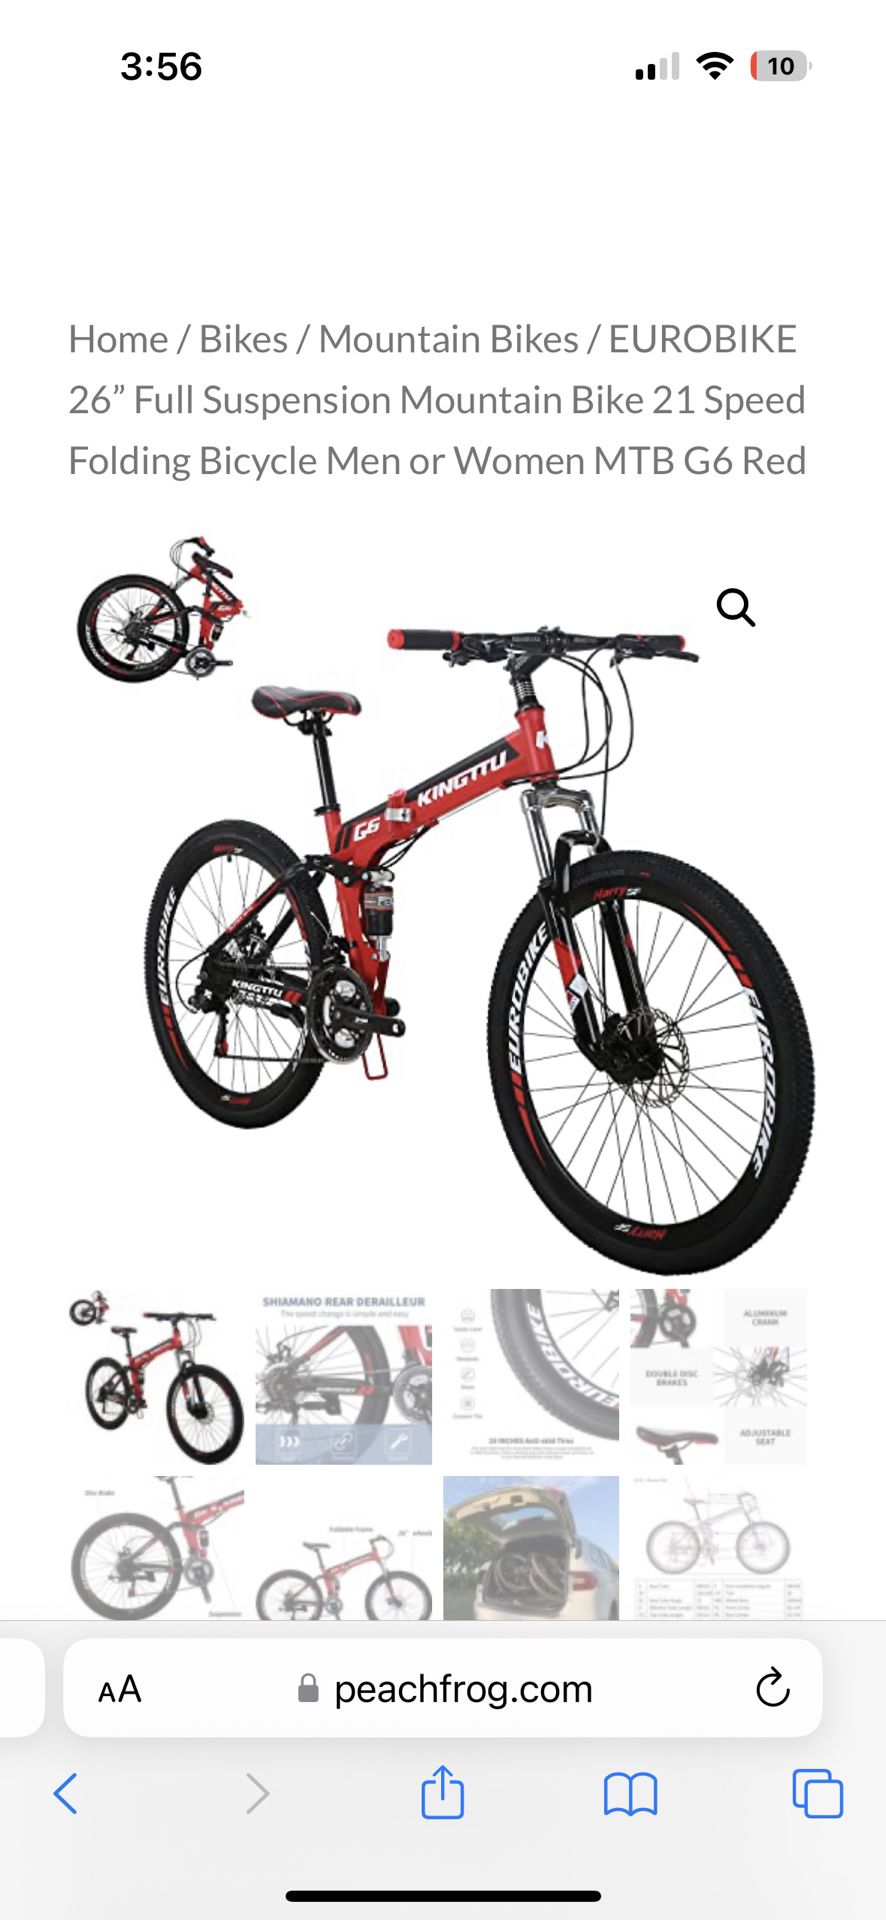 26” Full Suspension Mountain Bike 21 Speed Folding Bicycle Men or Women MTB G6